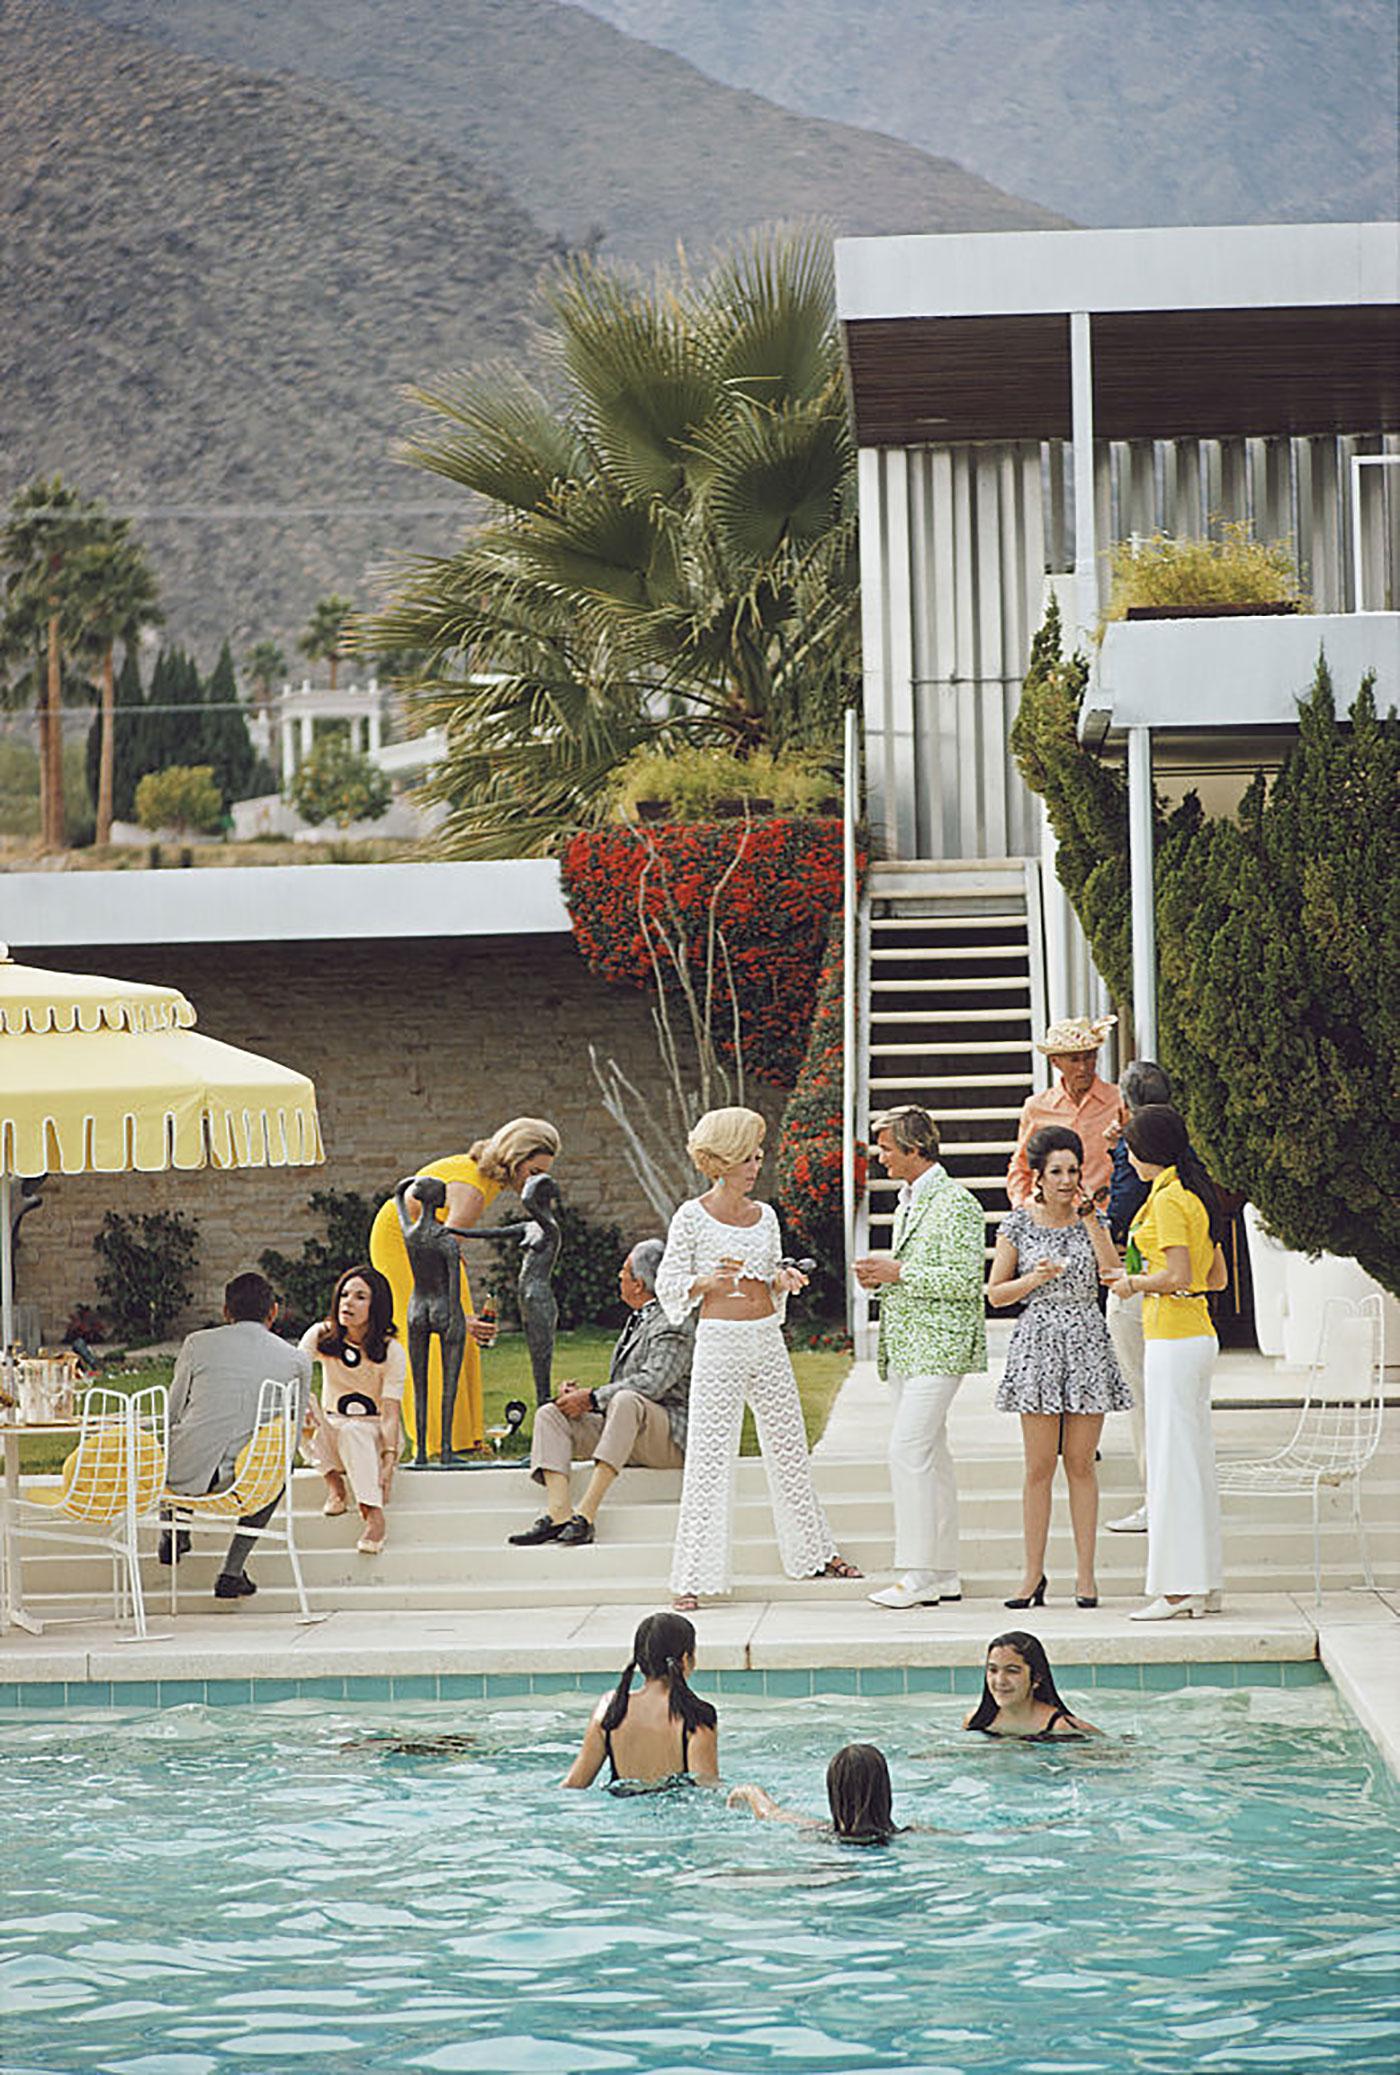 Wüstenhaus-Party 
1970 (später gedruckt)
Chromogener Lambda-Druck
Nachlassauflage von 150 Stück

Gäste am Pool im Wüstenhaus von Nelda Linsk in Palm Springs, Kalifornien, Januar 1970. Das Haus wurde von Richard Neutra für Edgar J. Kaufmann